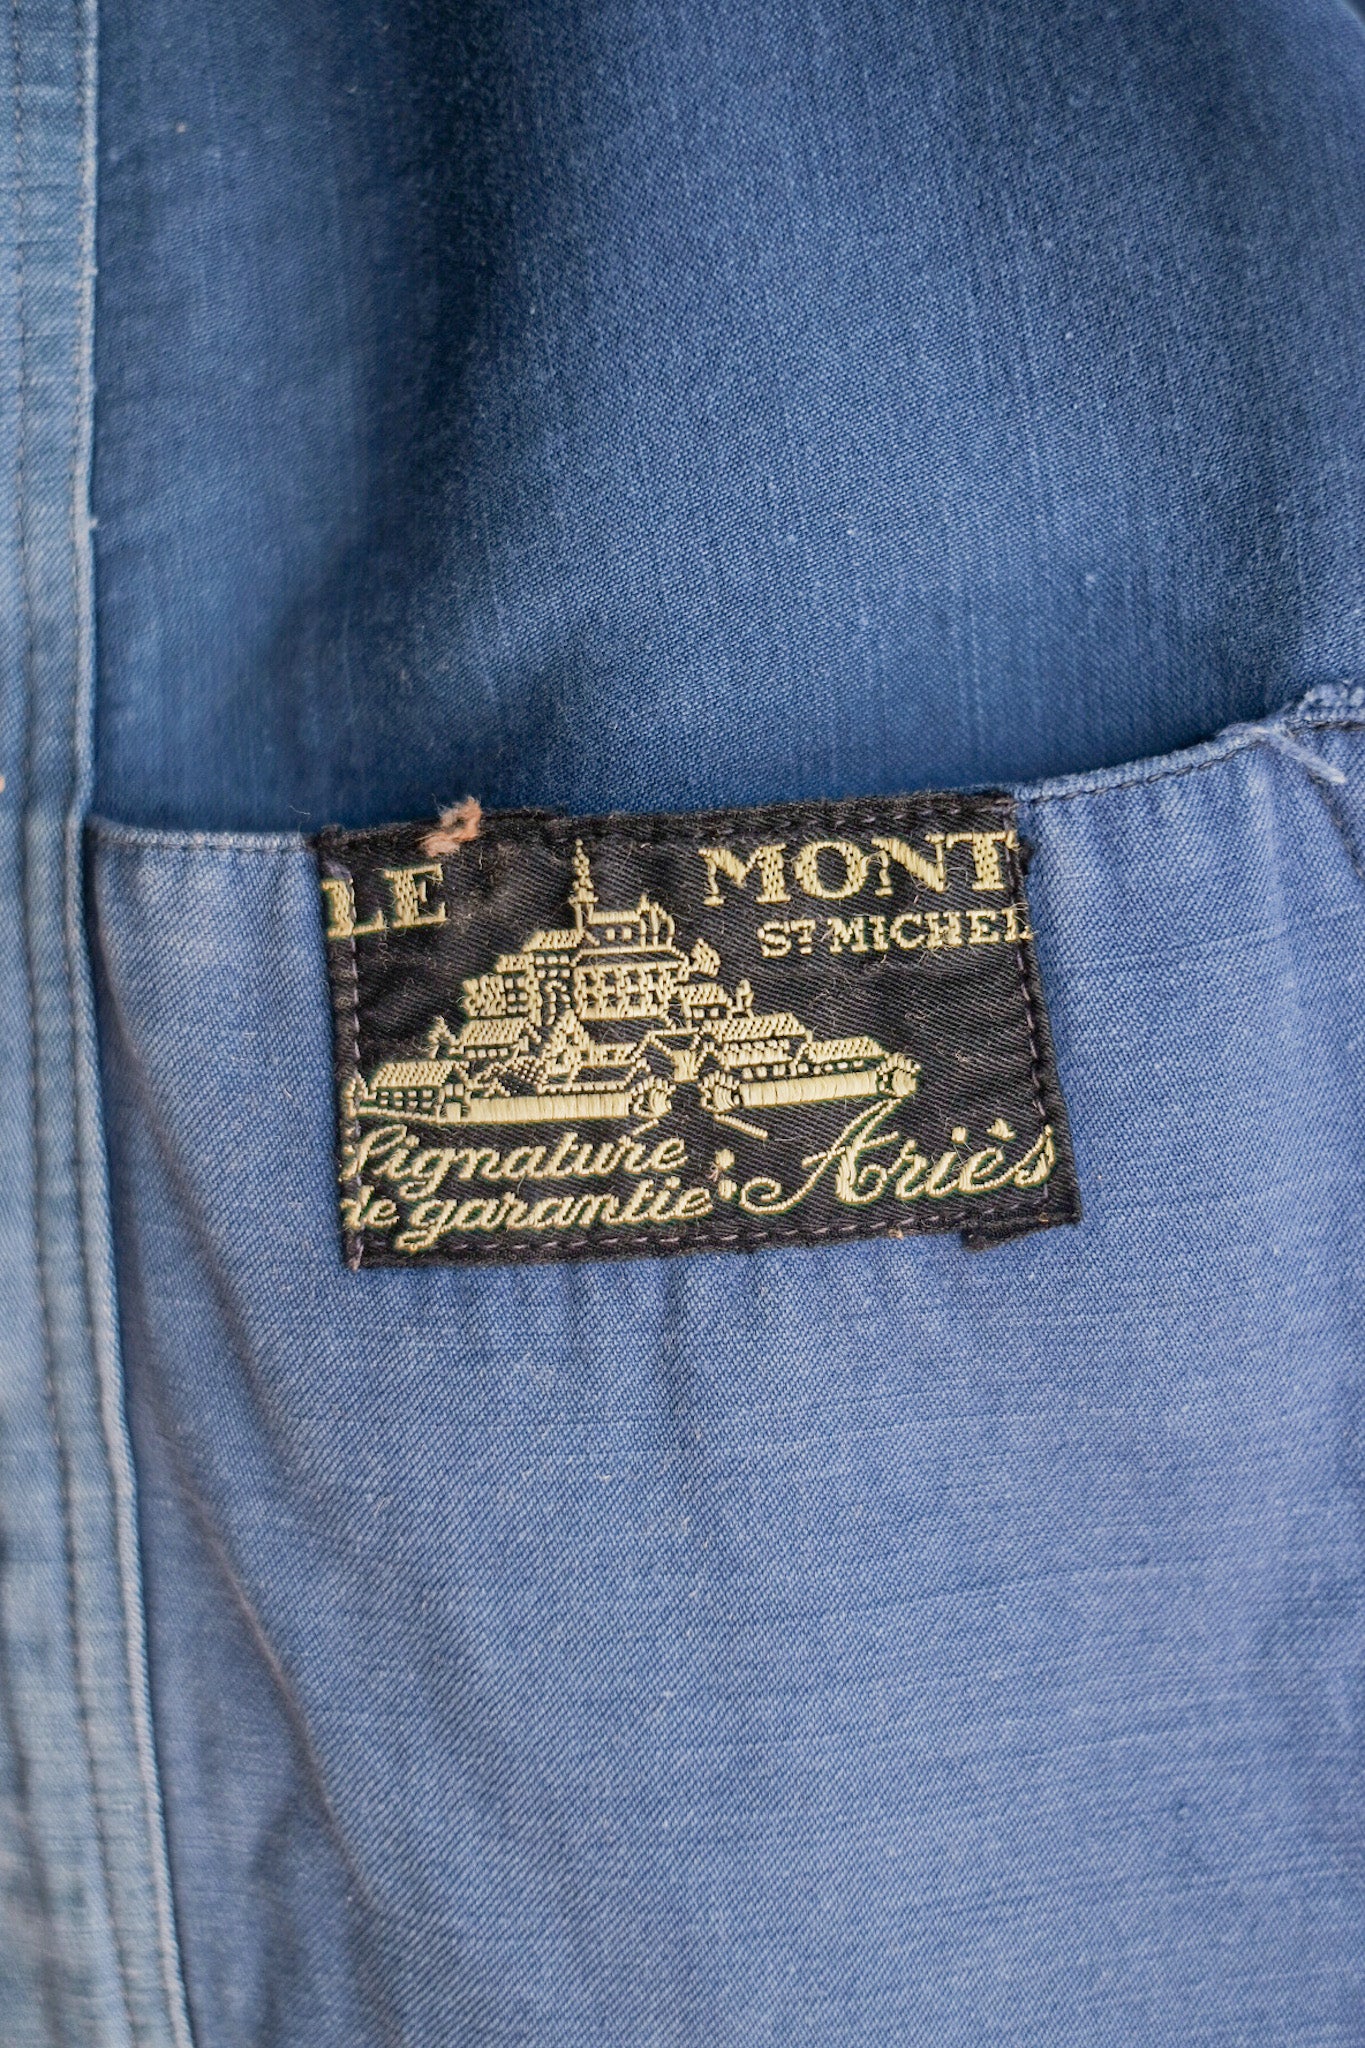 [~ 40's] แจ็คเก็ตงานโมลสกินสีน้ำเงินวินเทจฝรั่งเศส "Le Mont St. Michel"